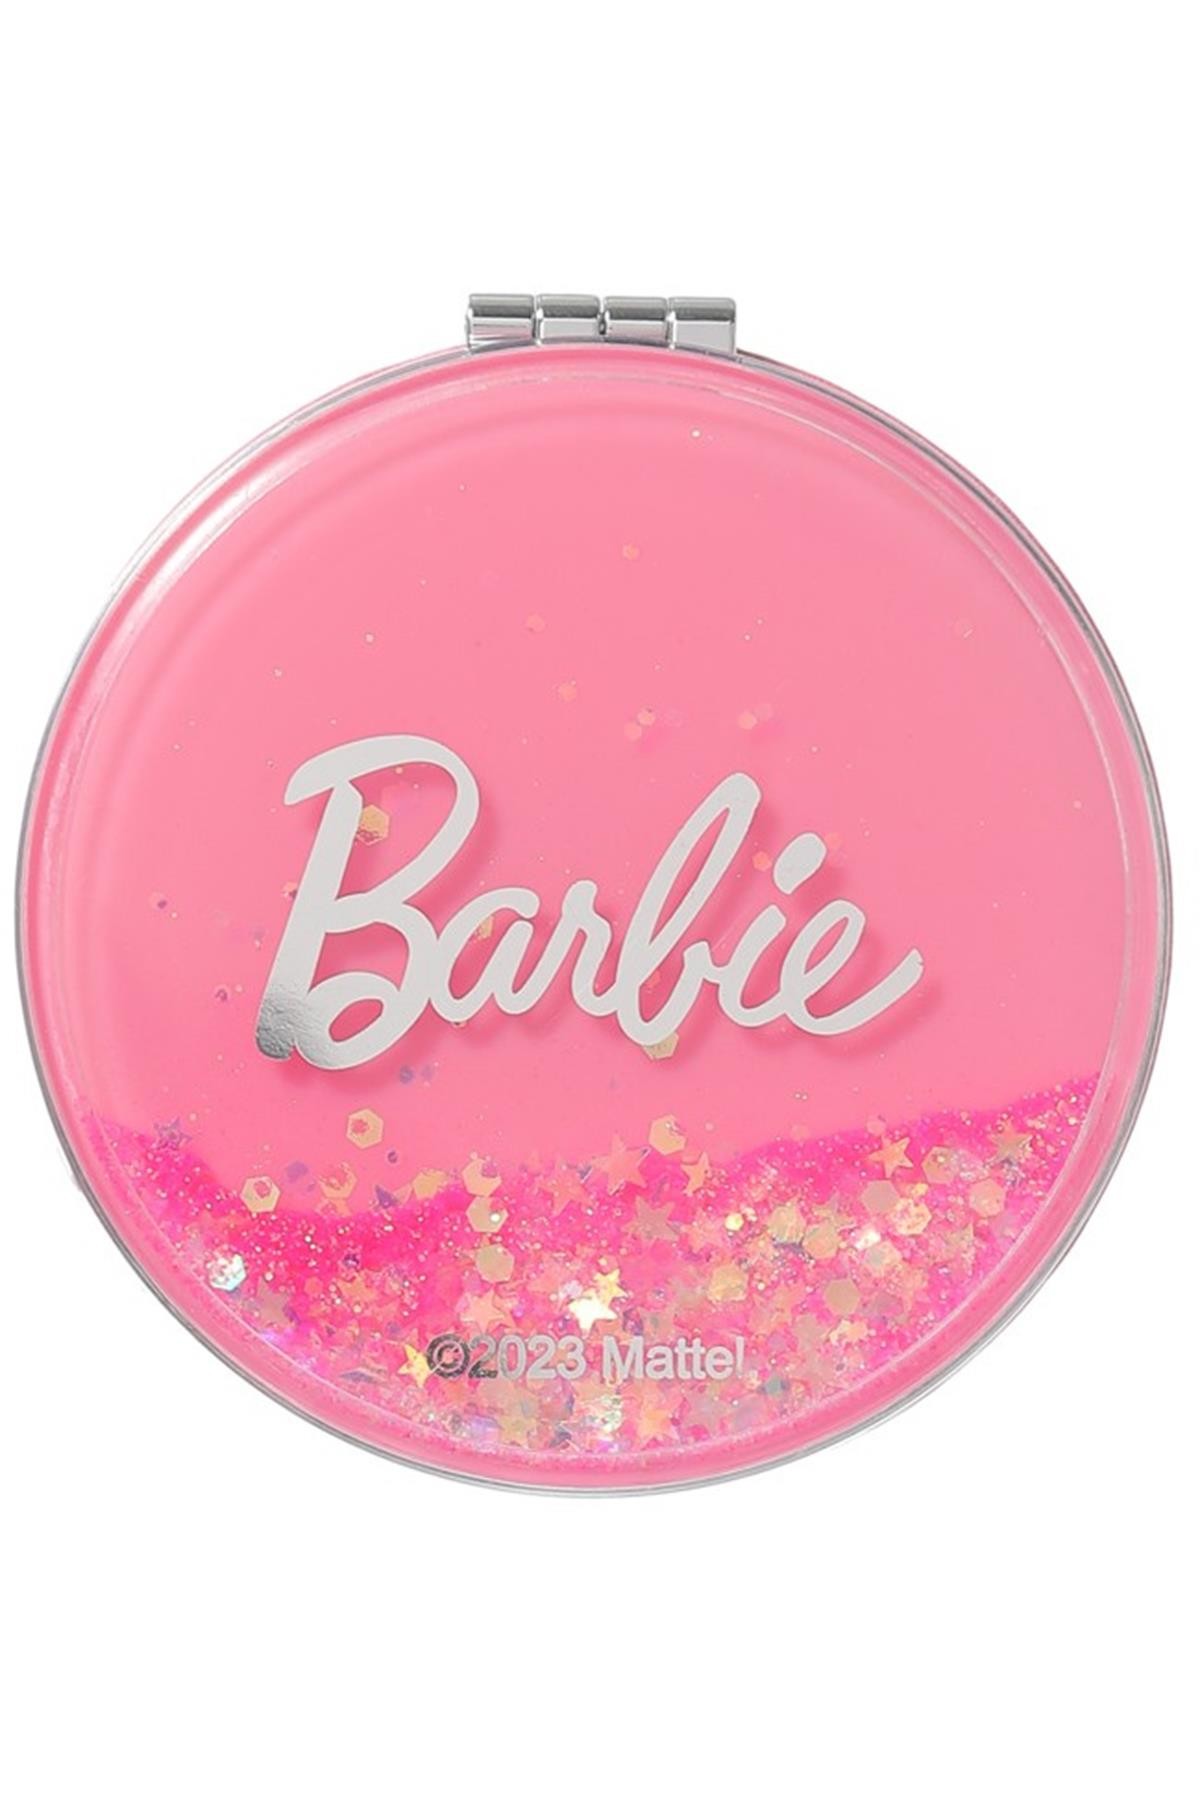 Barbie Lisanslı Kapaklı Cep Aynası